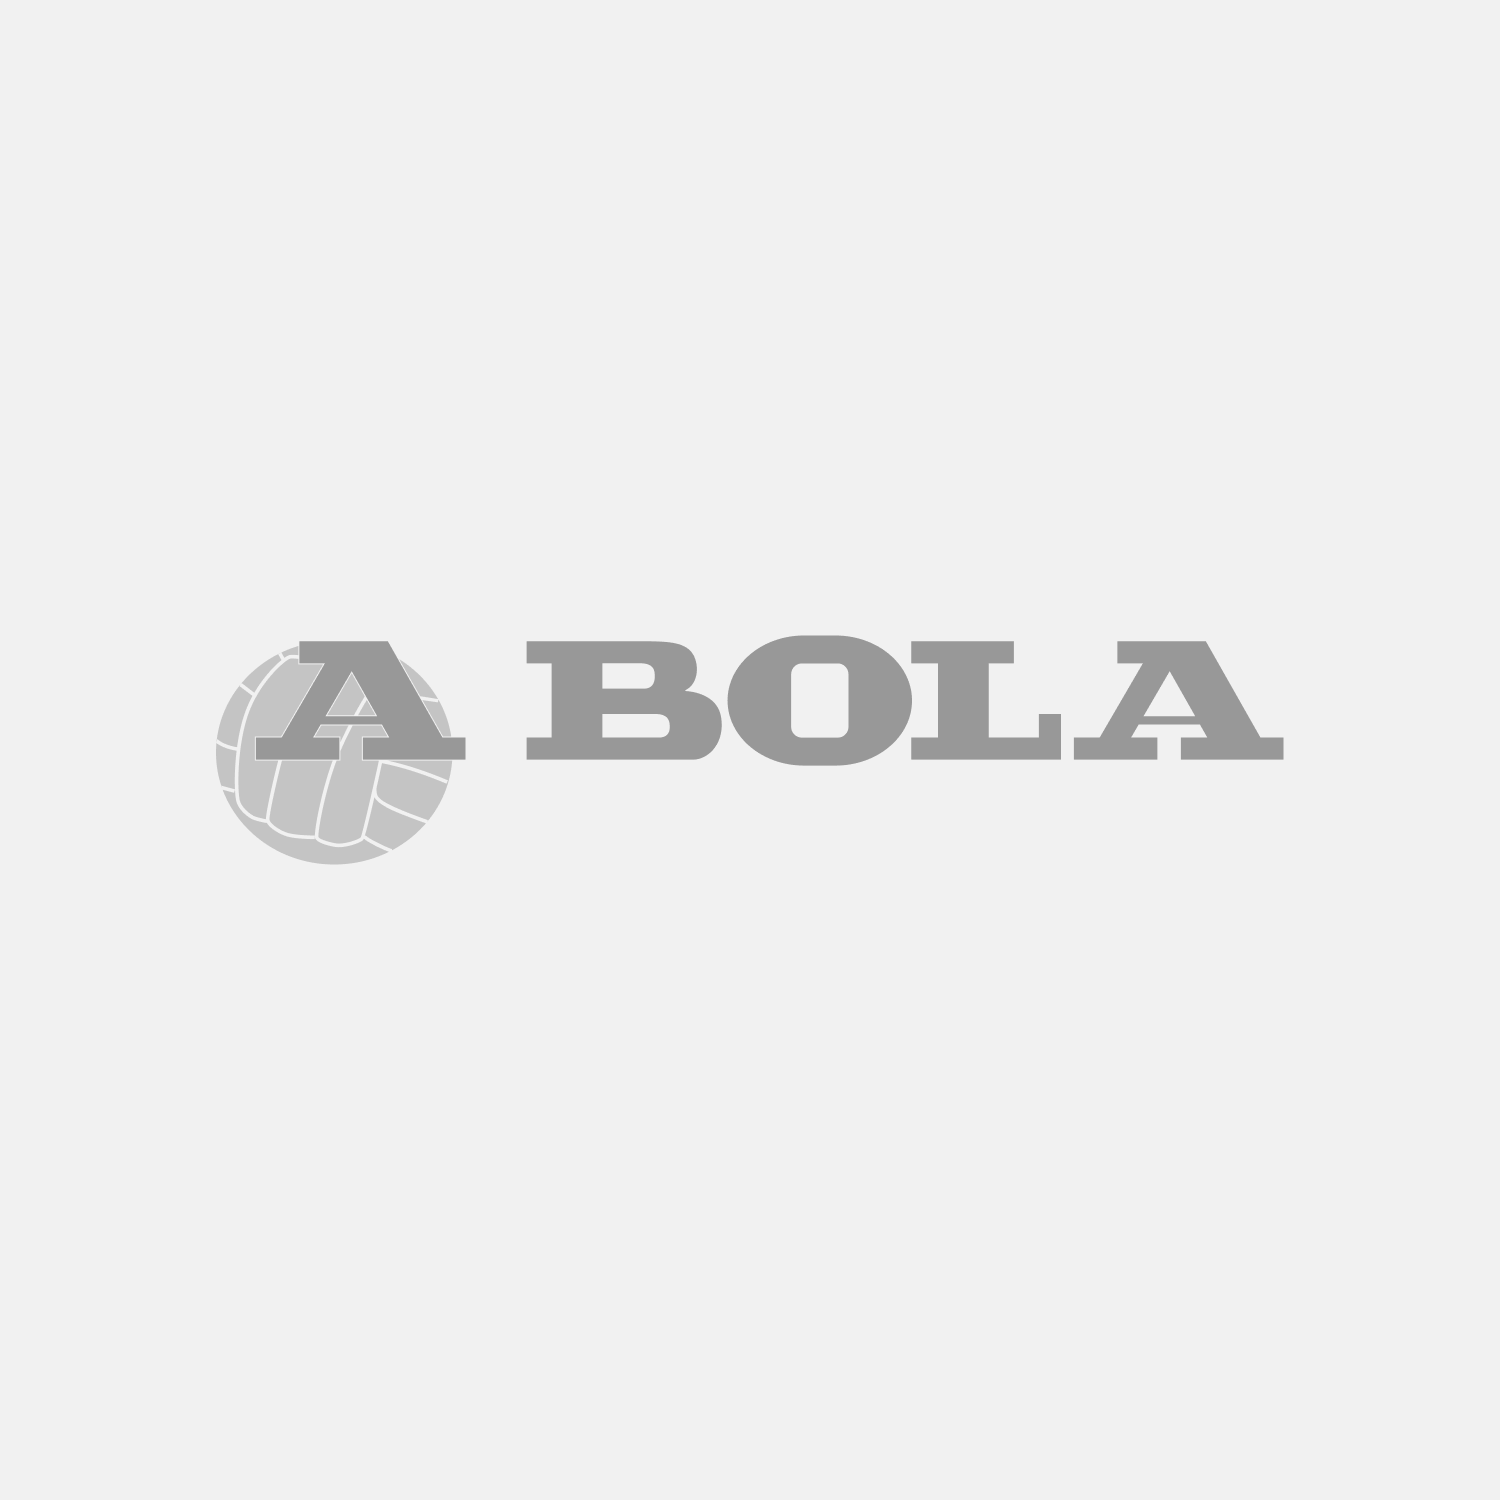 Villas-Boas revela como vai acompanhar os resultados